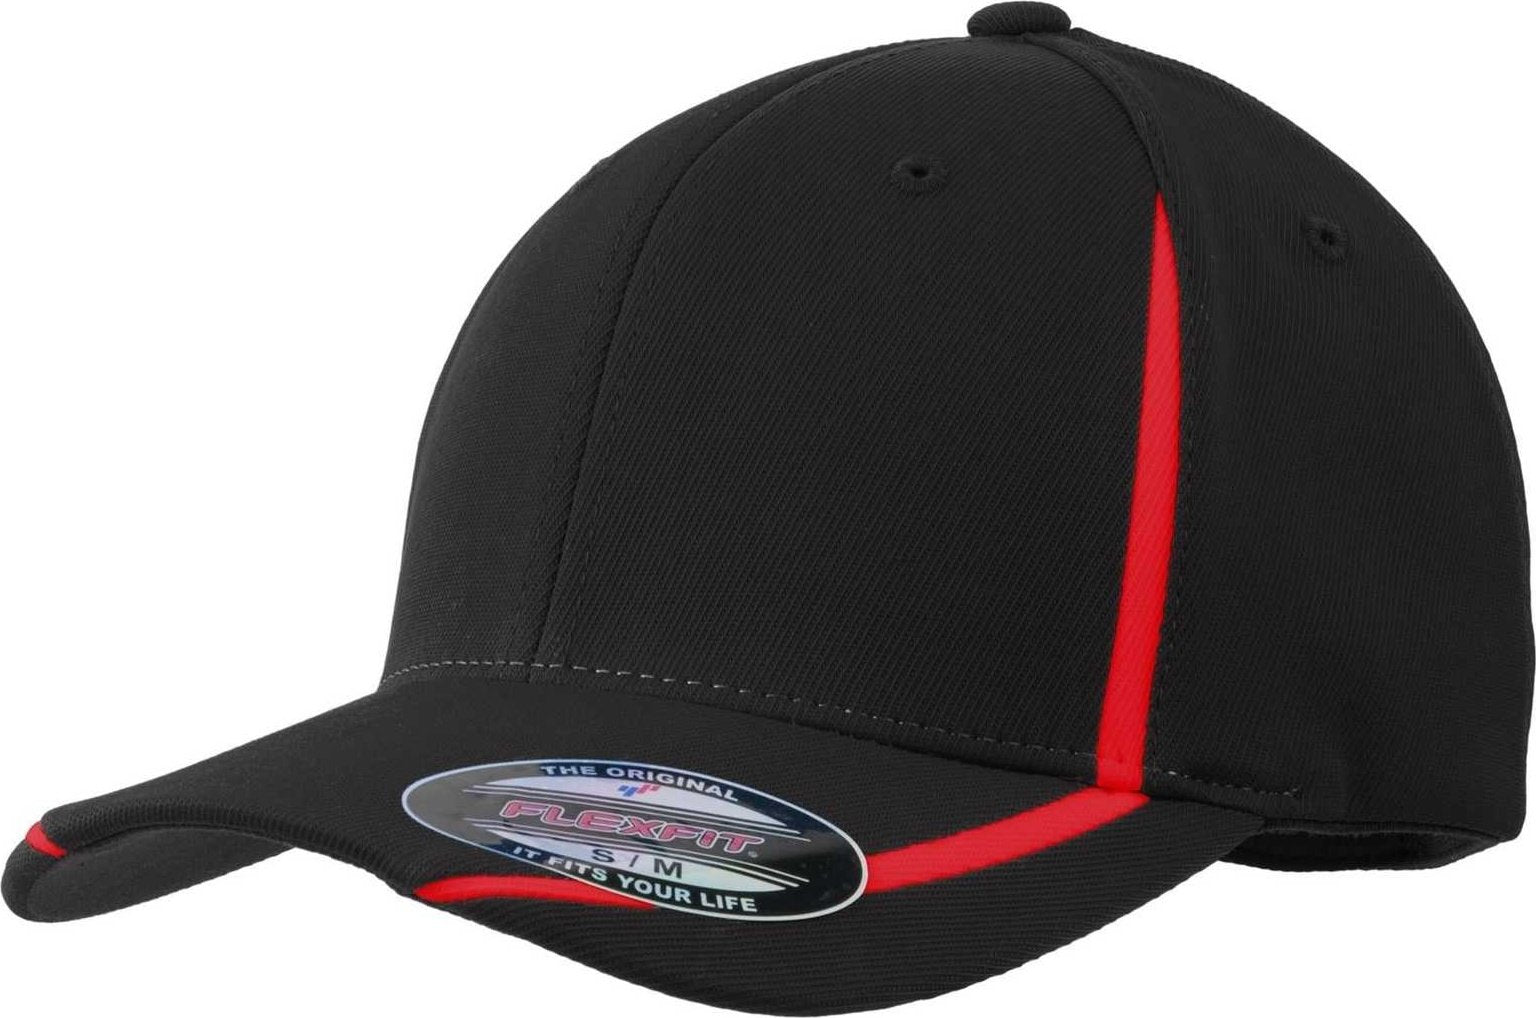 Sport-Tek STC16 Flexfit Performance Colorblock Cap - Black True Red - HIT a Double - 1